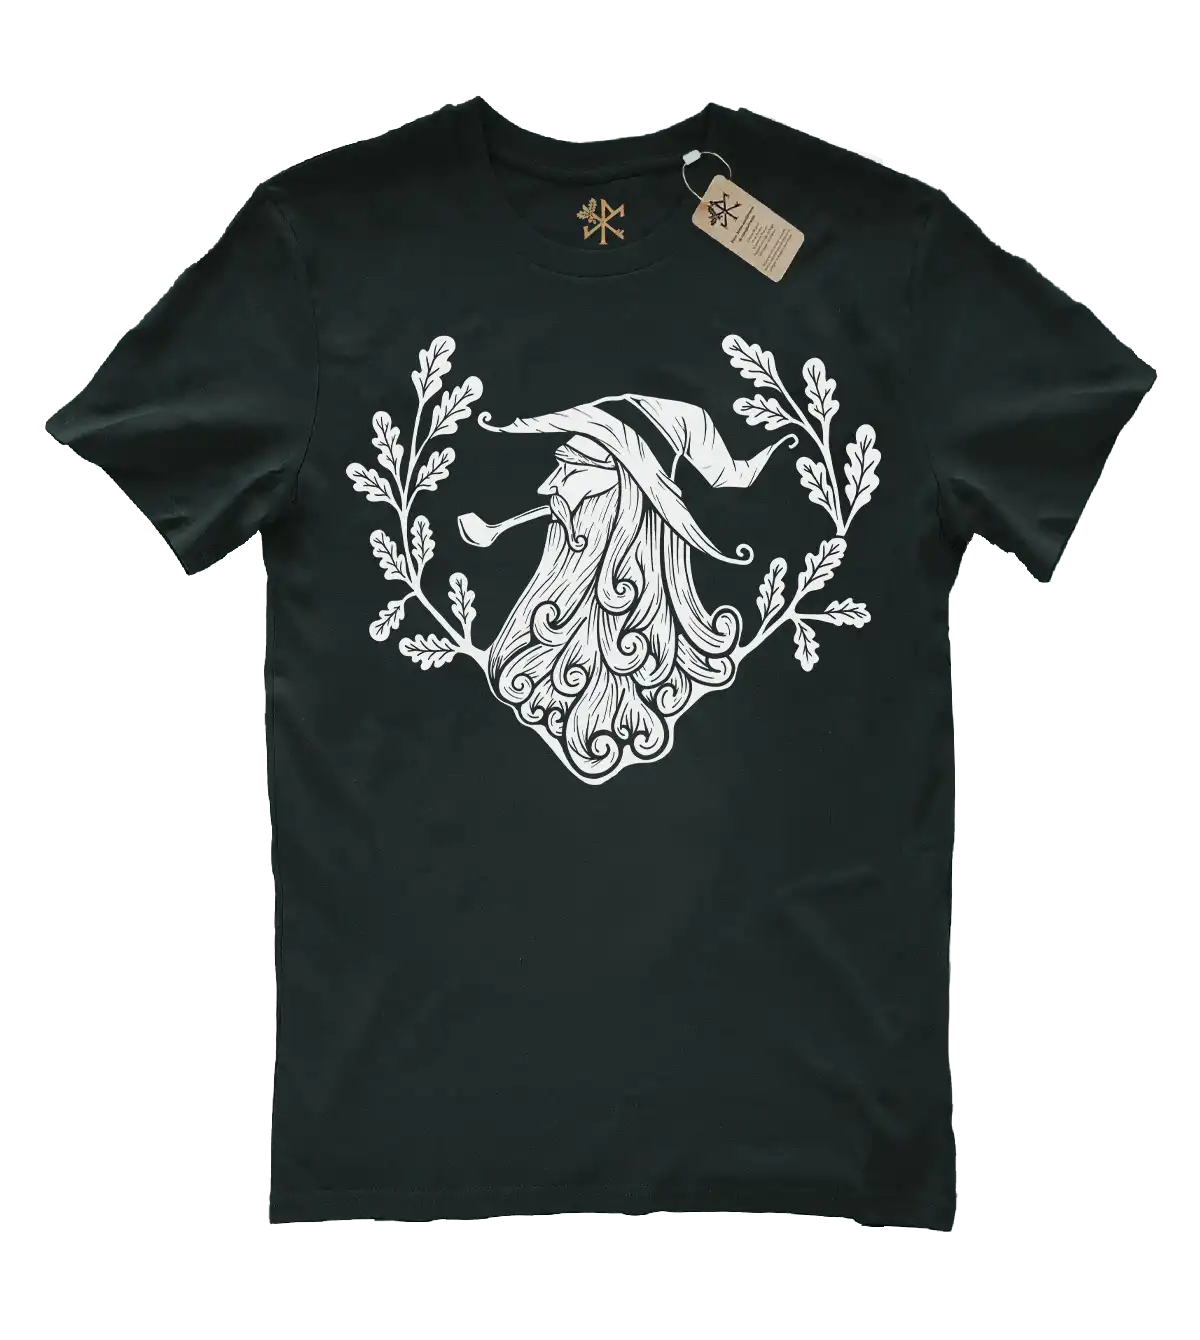 Un t-shirt mythologie nordique Odin Merlin avec la Rune du voyageur et des branches de pin. T-shirt de la marque Runes de Chêne.  T-shirt dieu nordique, t-shirt viking biologique